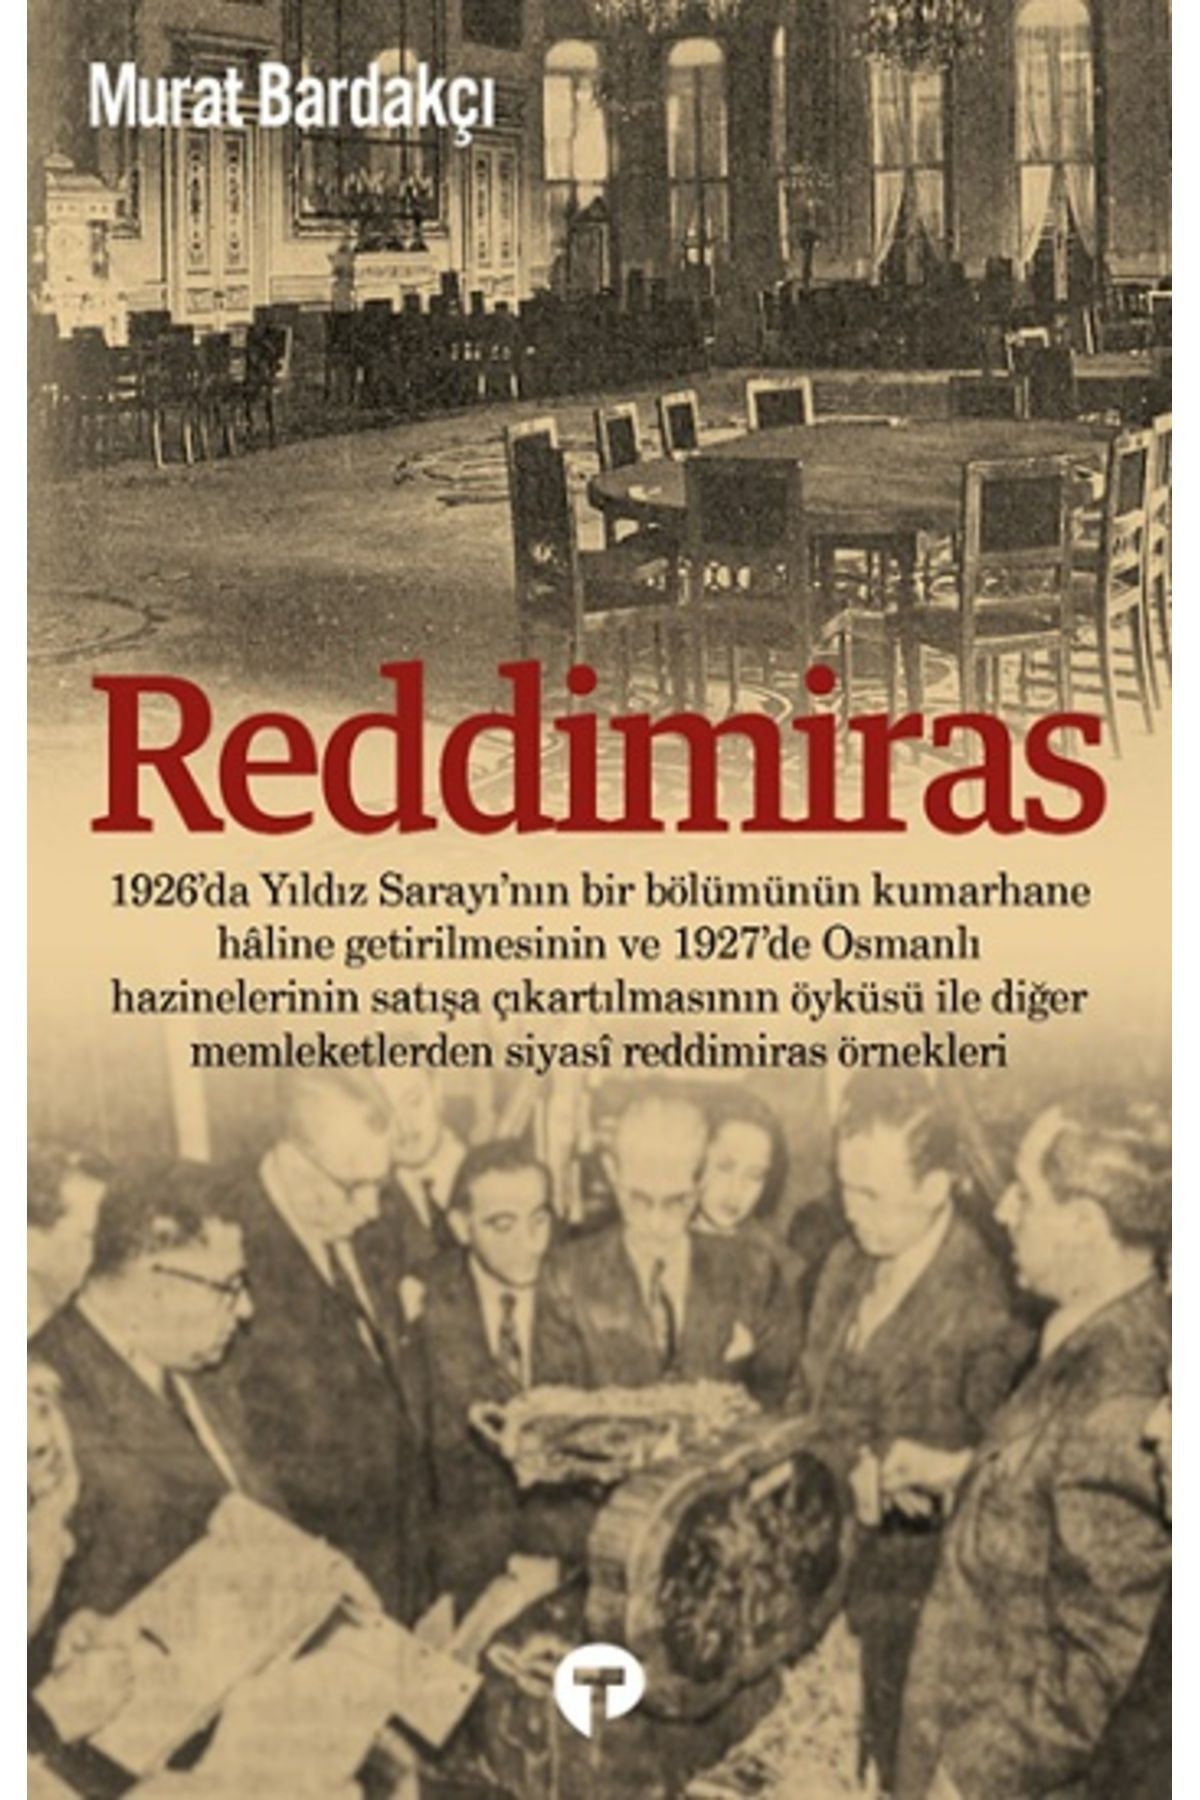 Turkuvaz Kitap Reddimiras kitabı - Murat Bardakçı - Turkuvaz Kitap